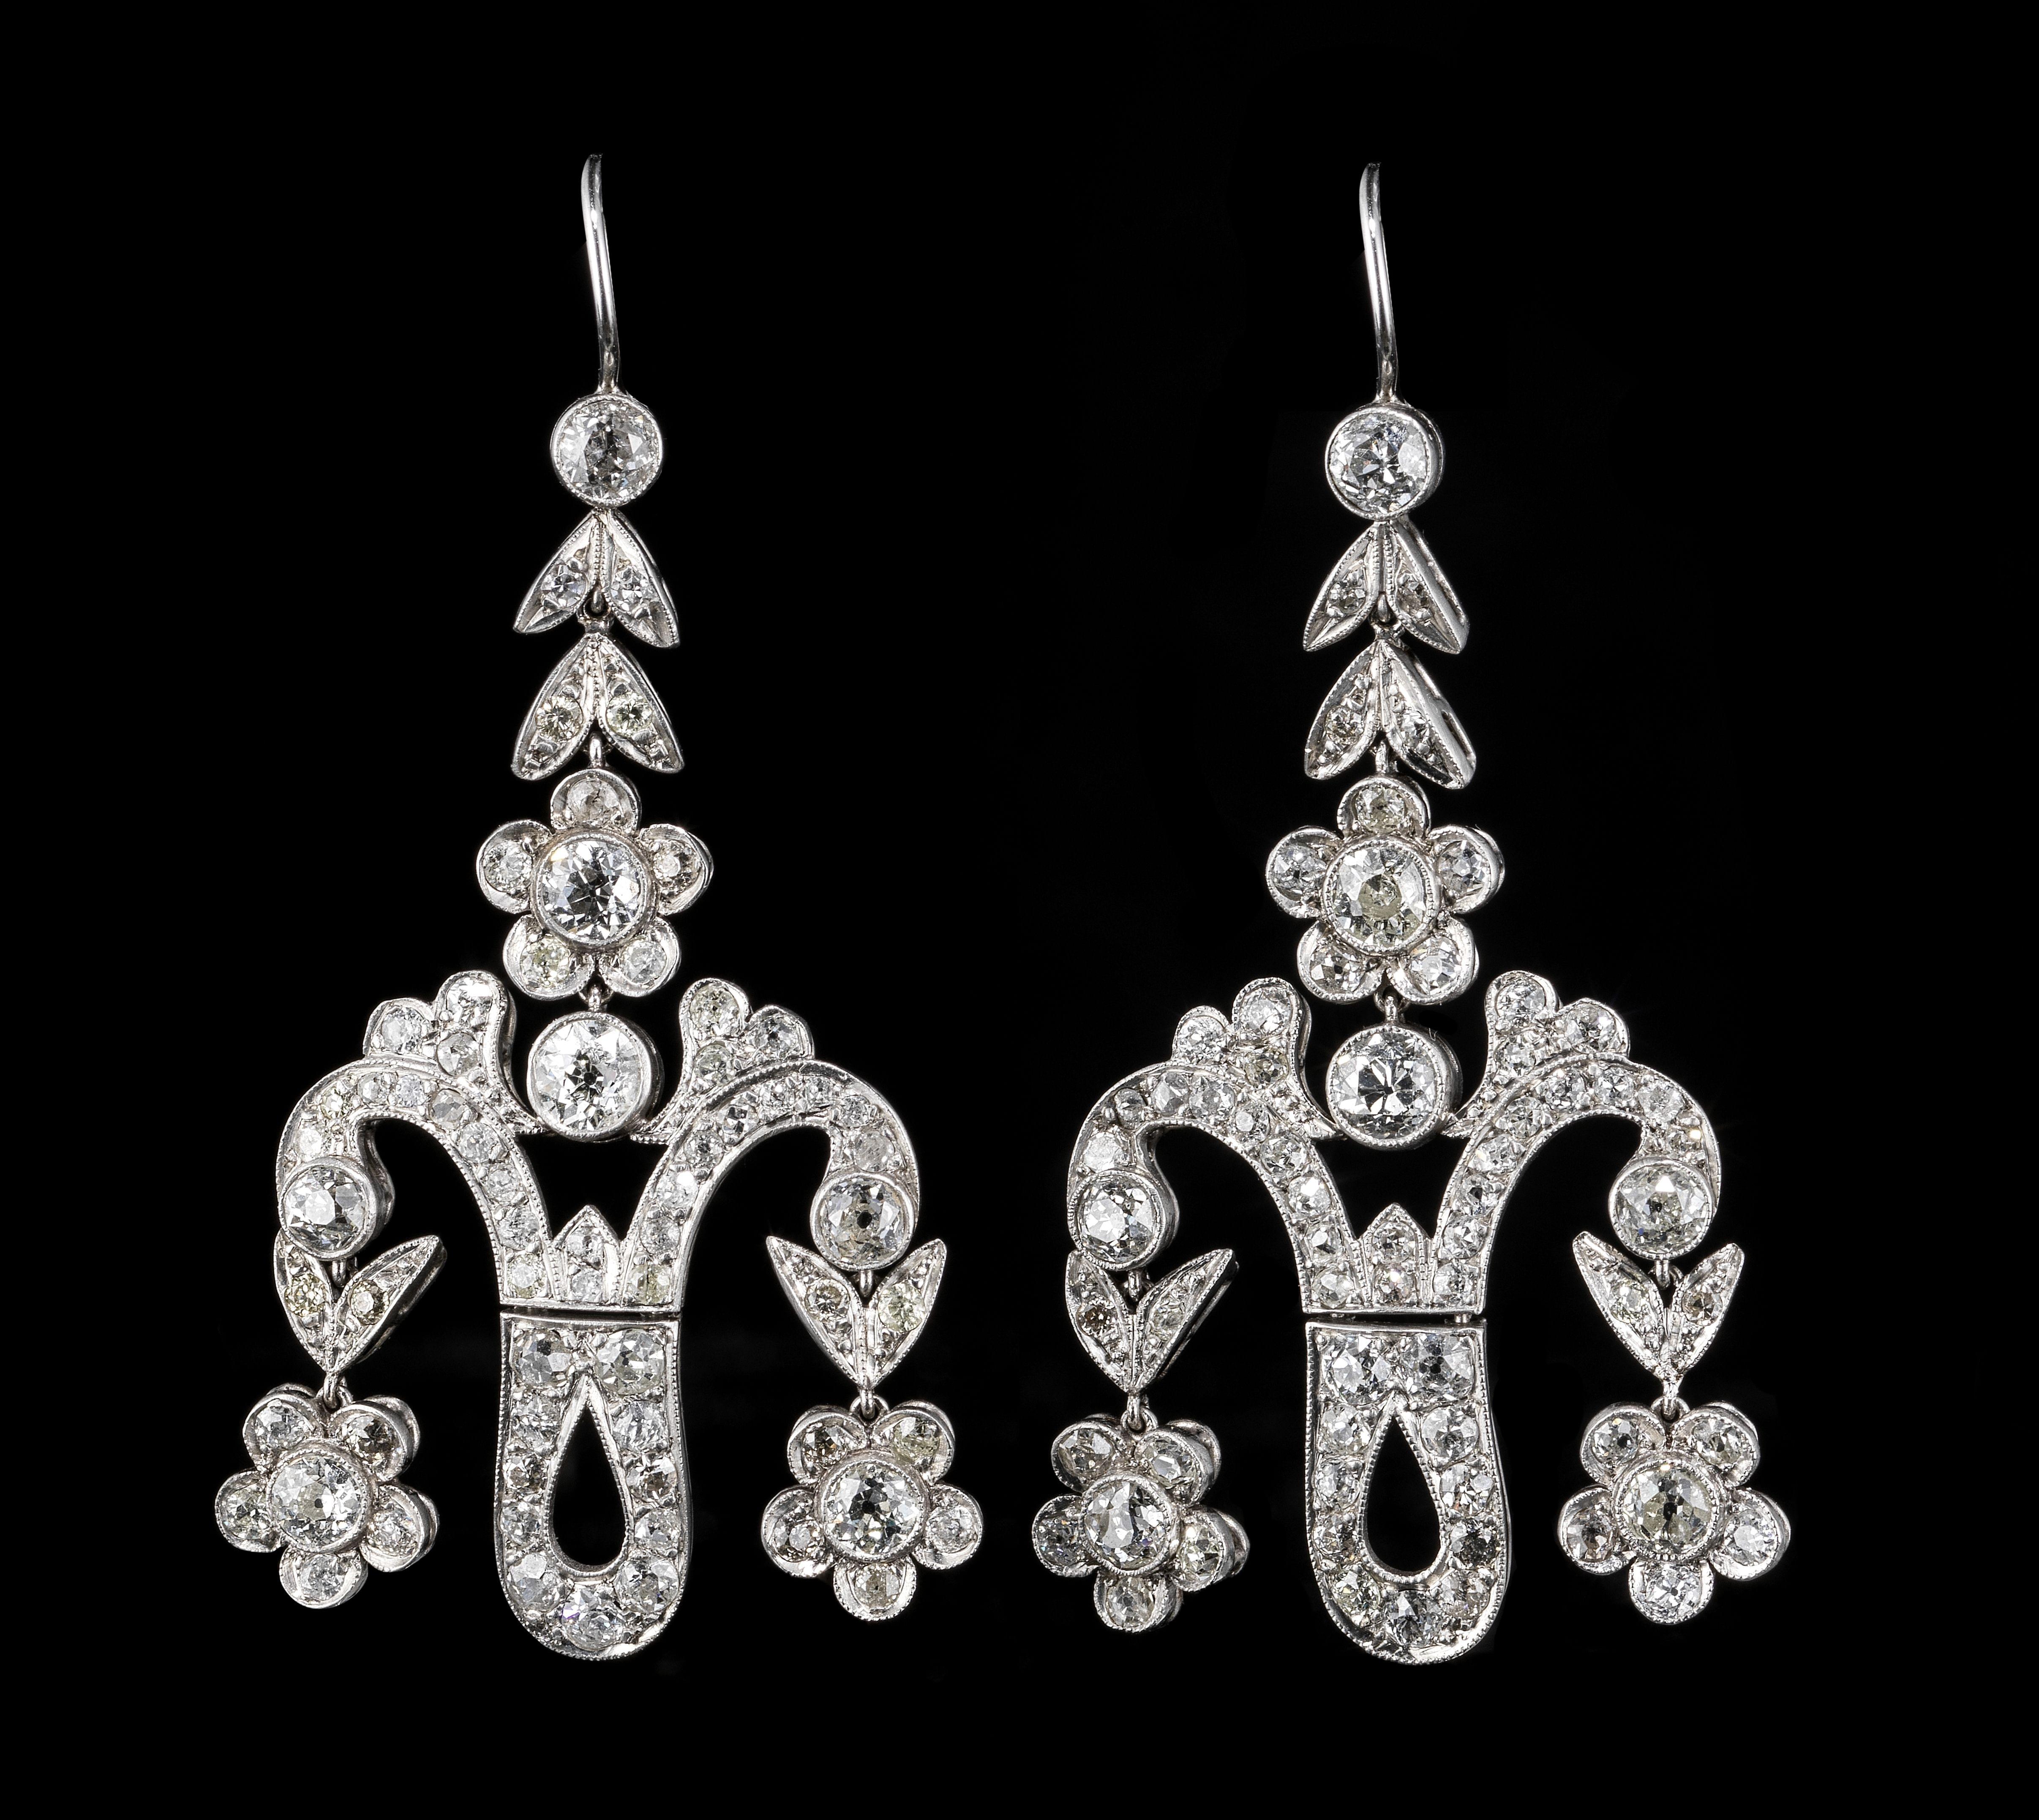 *Boucles d'oreilles girandole à motif floral pavées de diamants (env. 4 ct)